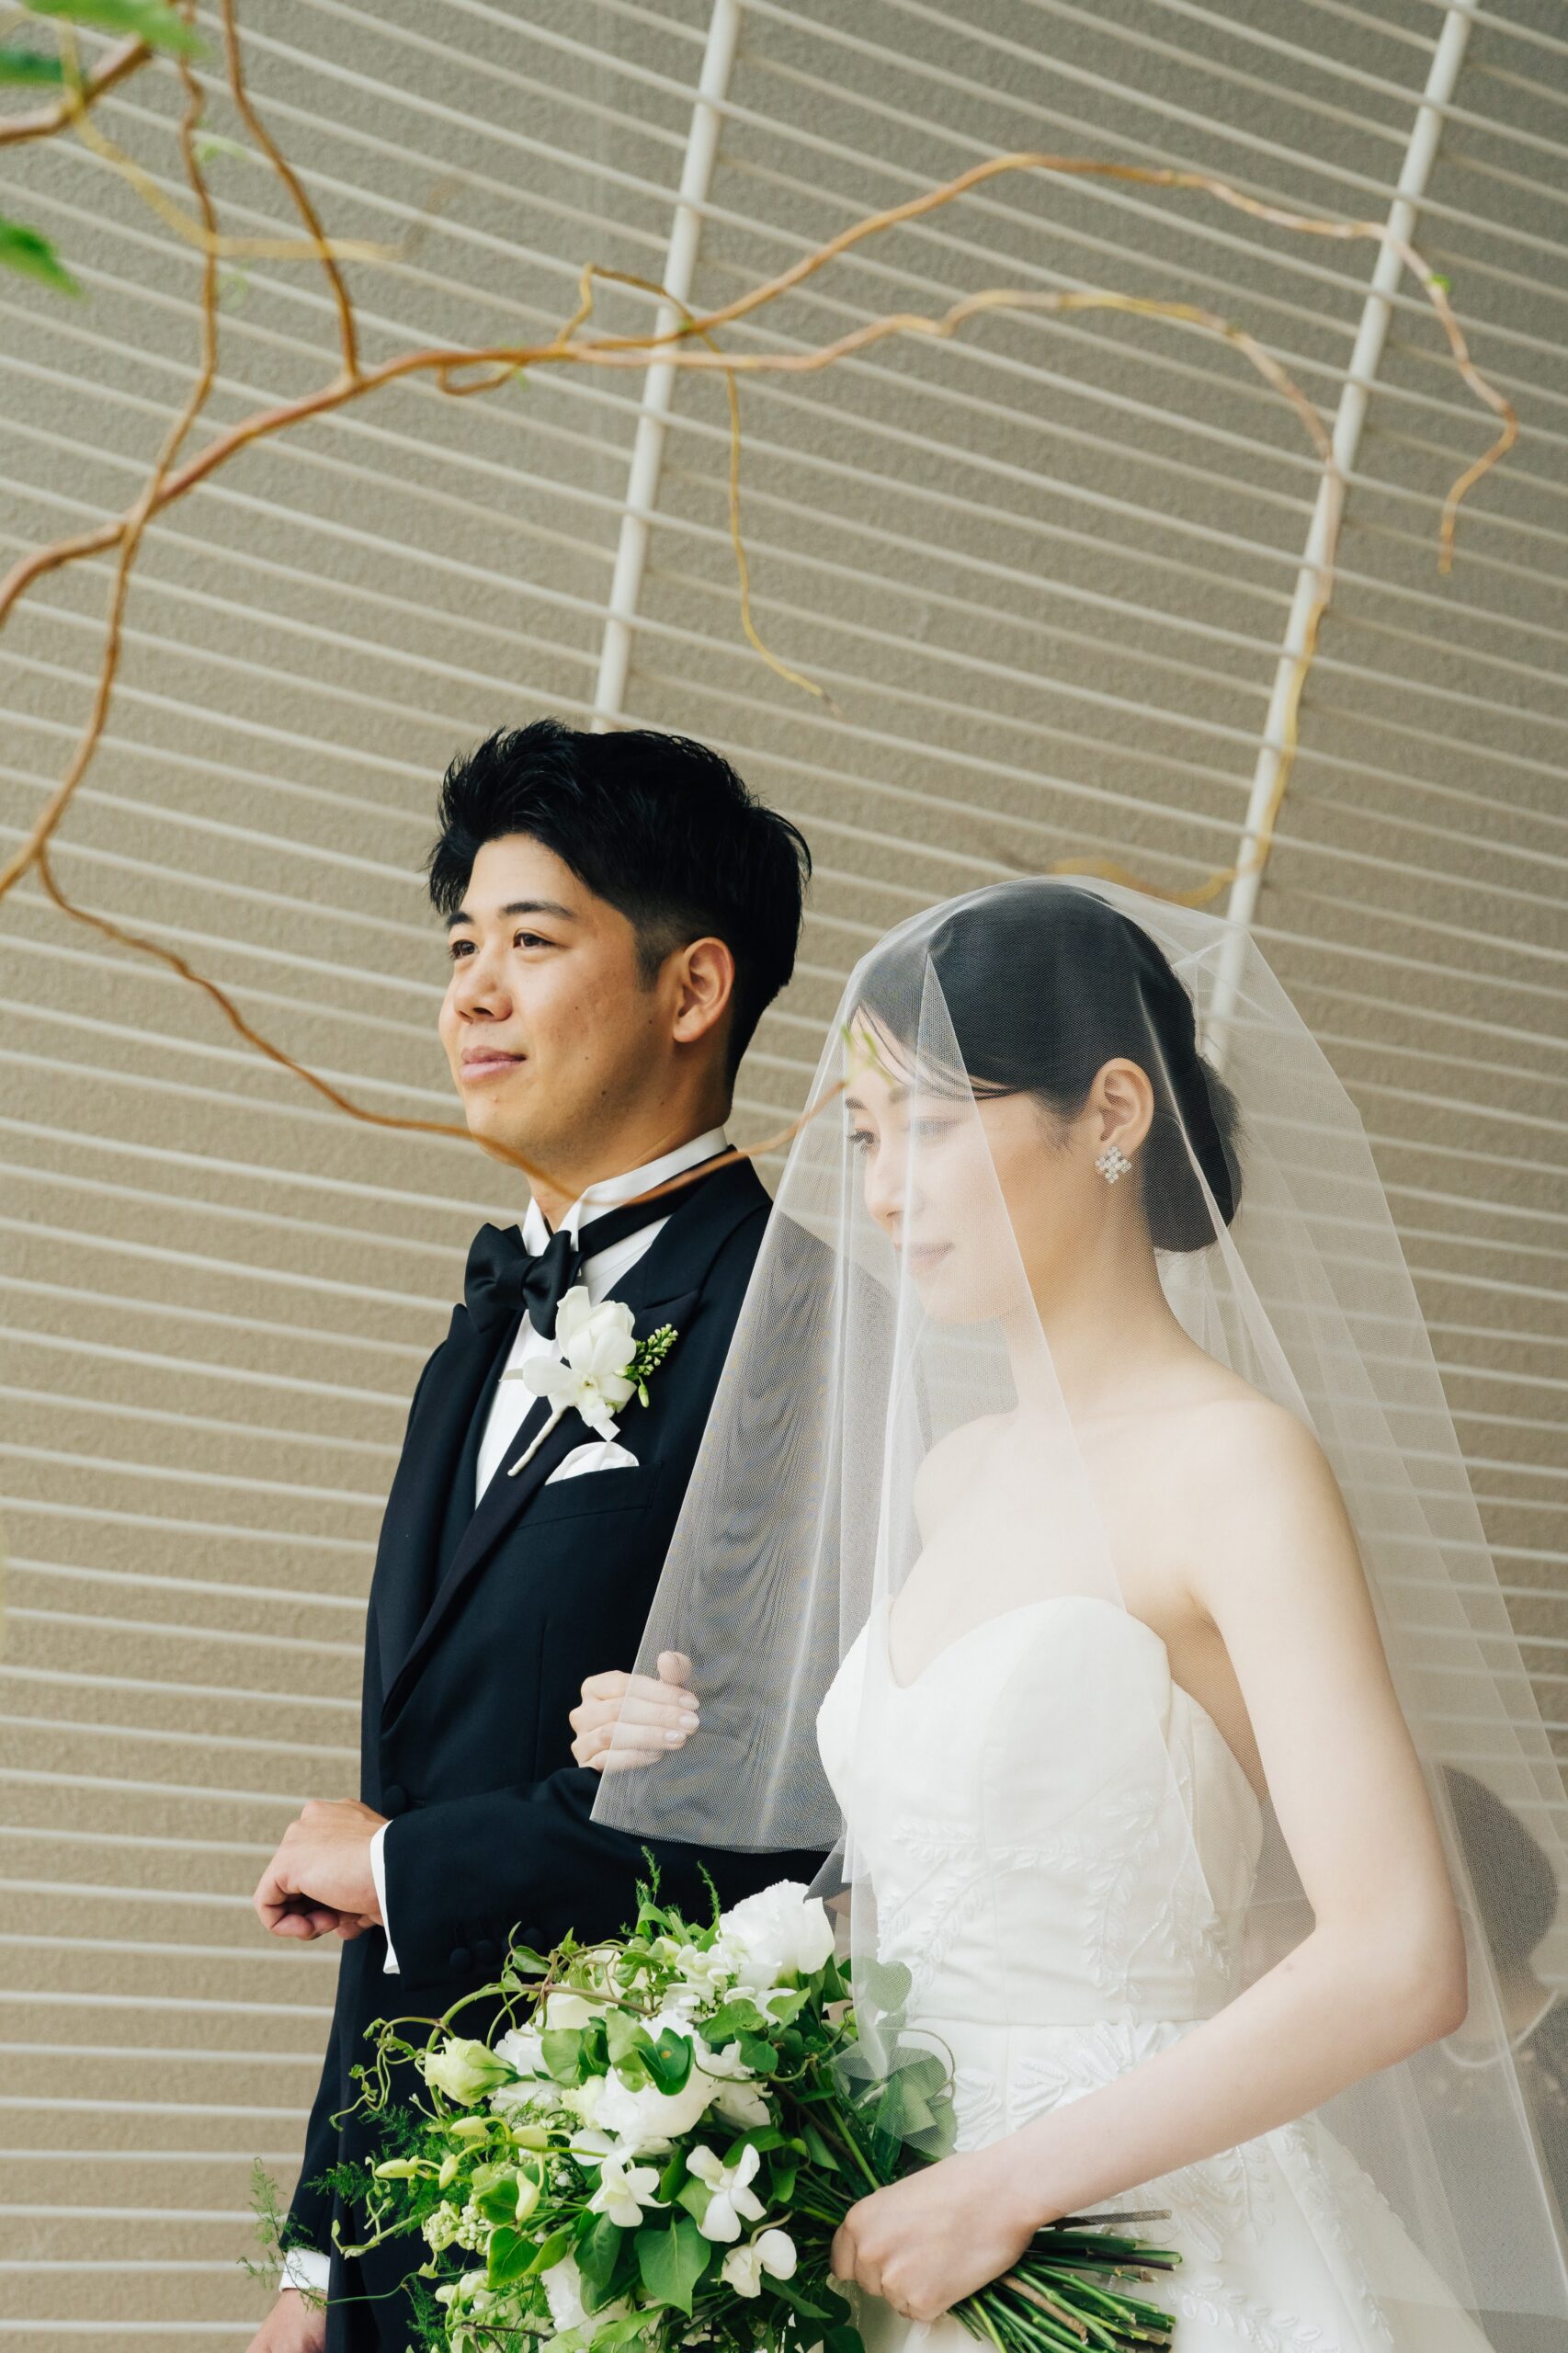 パレスホテル東京のチャペルは自然光が入り、シンプルなウェディングドレスとフォーマルなタキシードが映えます。